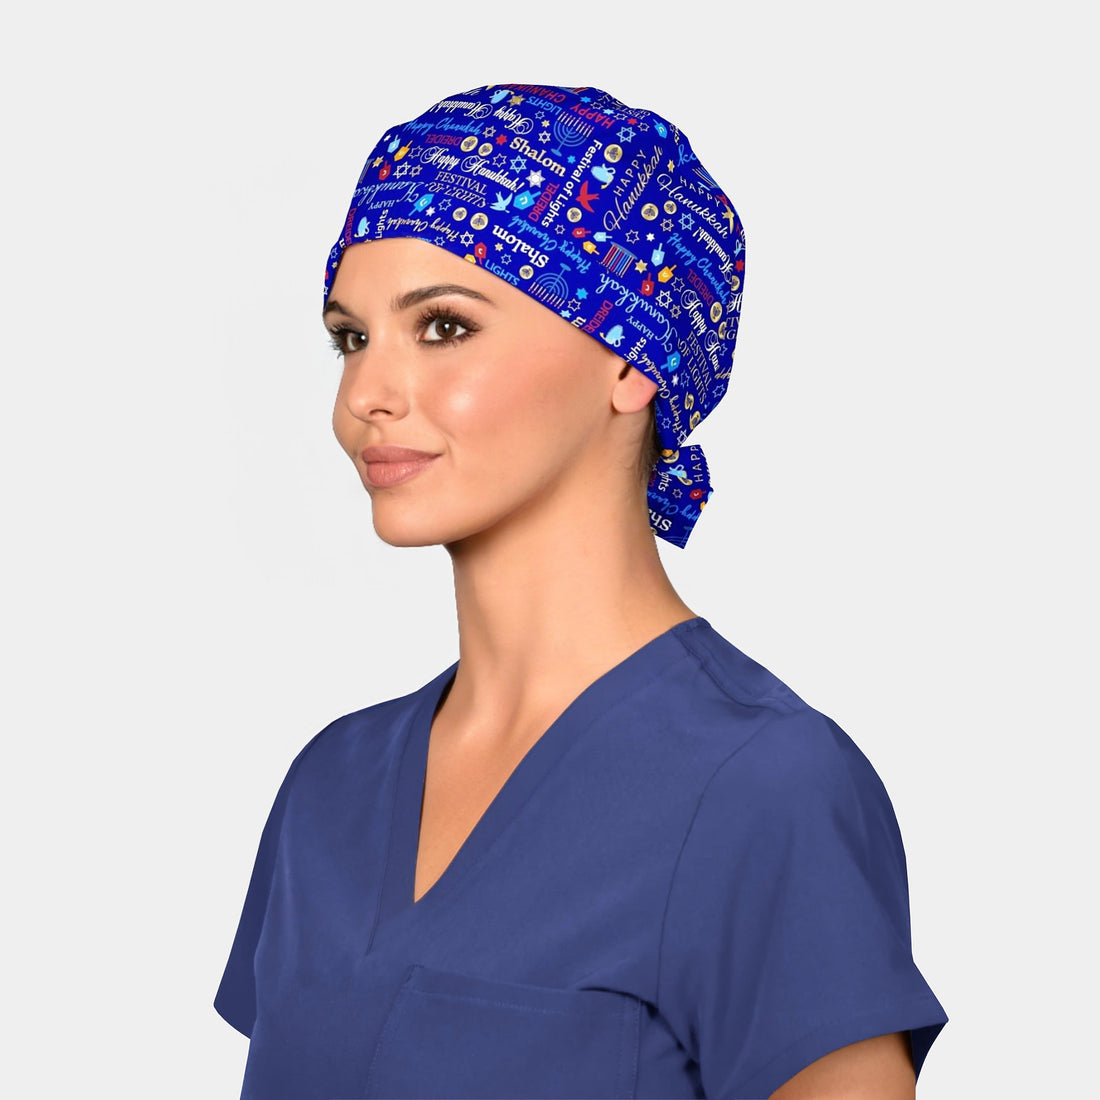 Chanukah - Pixie Surgical Caps